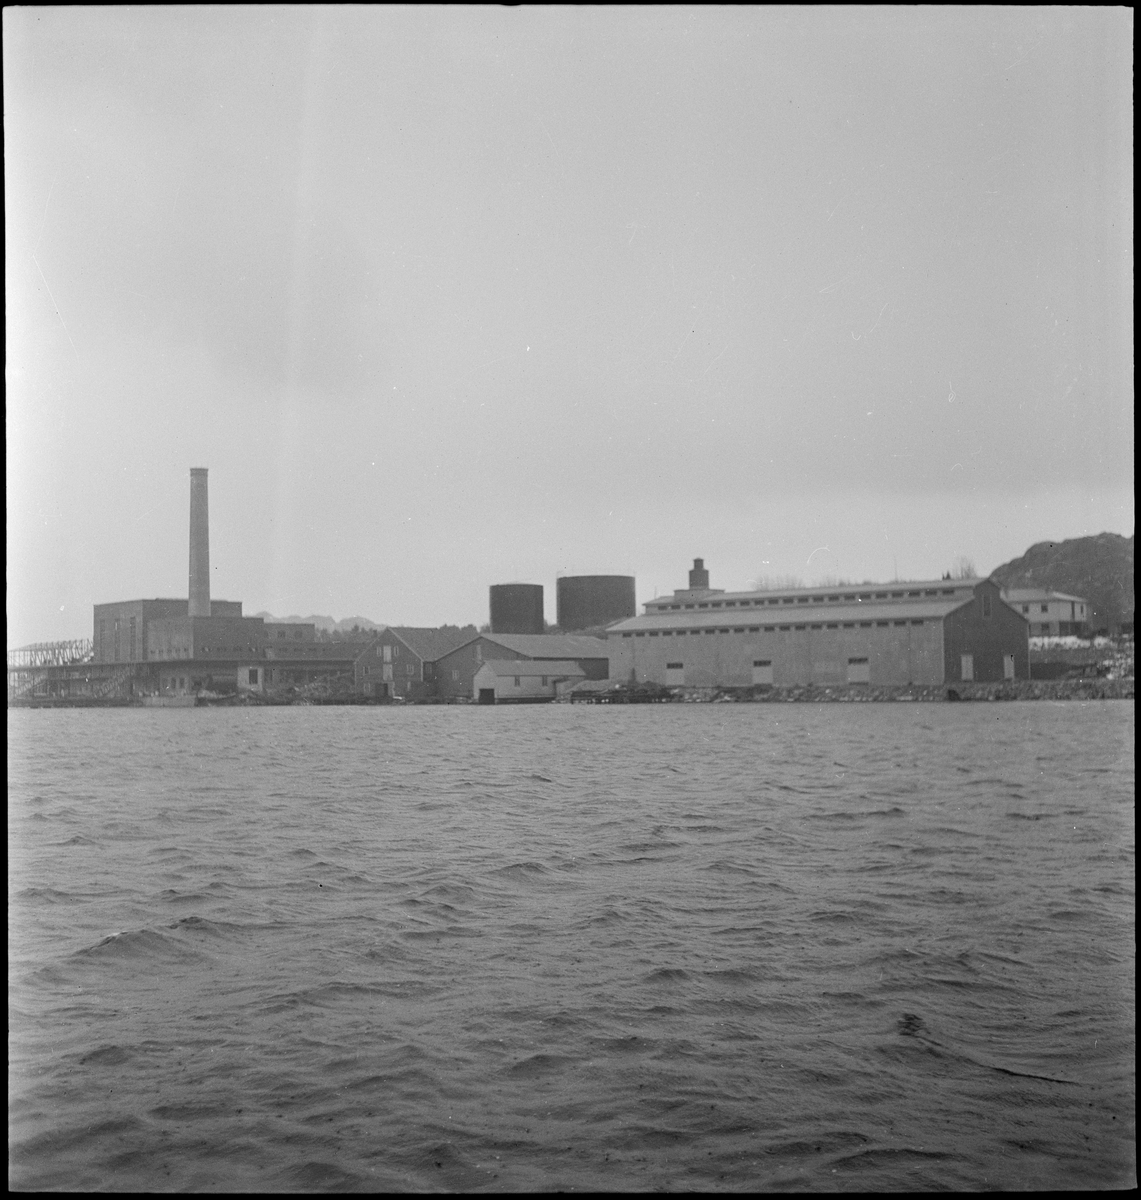 Sildoljefabrikken SILFAS på Grønehaugen i Eigersund rundt ferdigstillelse. Det er bilder av fabrikken, sildekummene og produksjonslinjene, samt en maskin.